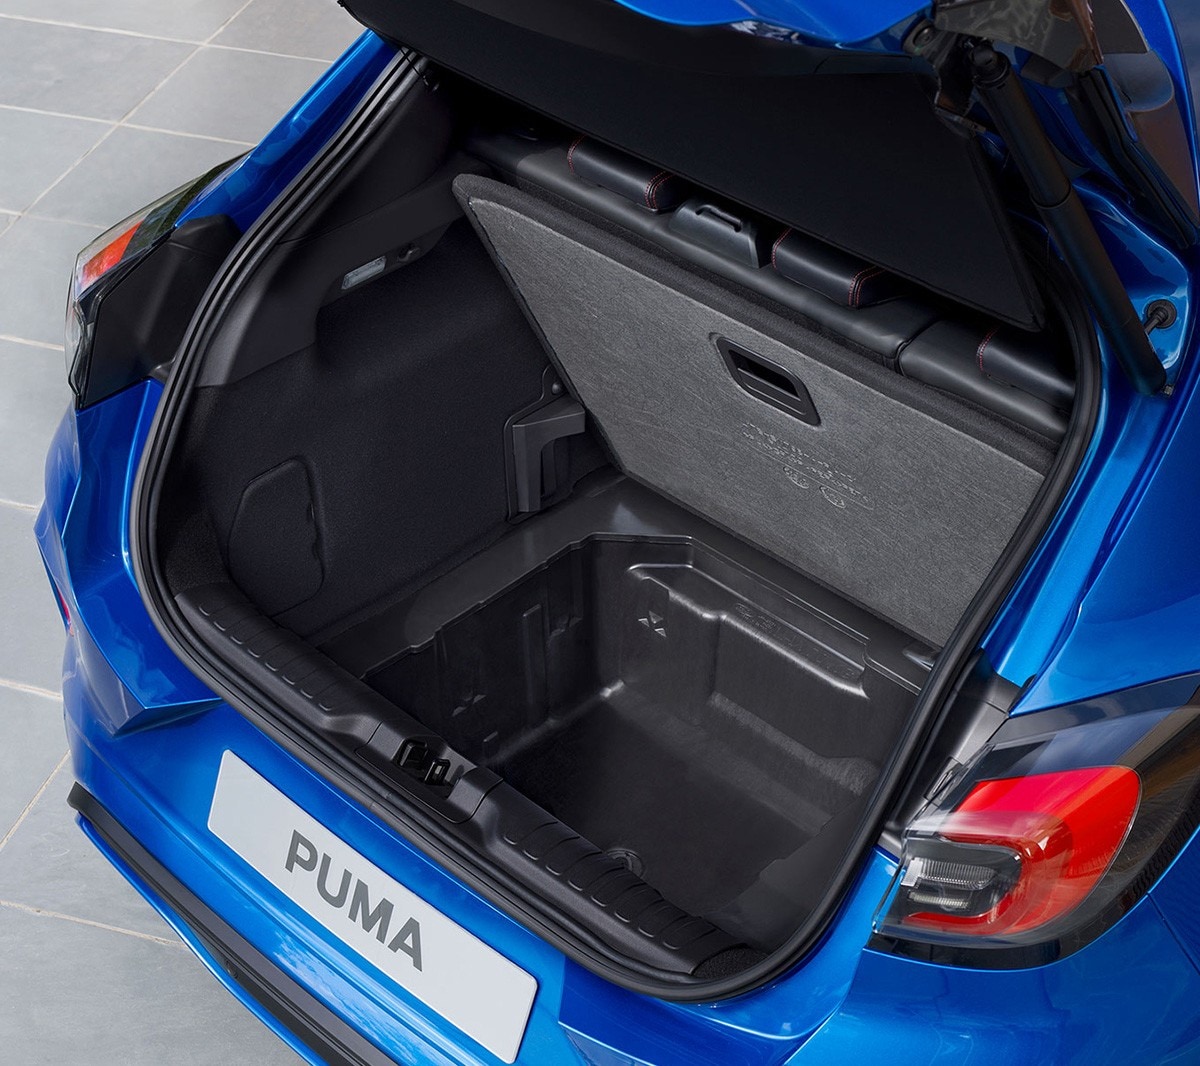 Ford Puma couleur bleue. Vue arrière sur le coffre ouvert et la Ford MegaBox